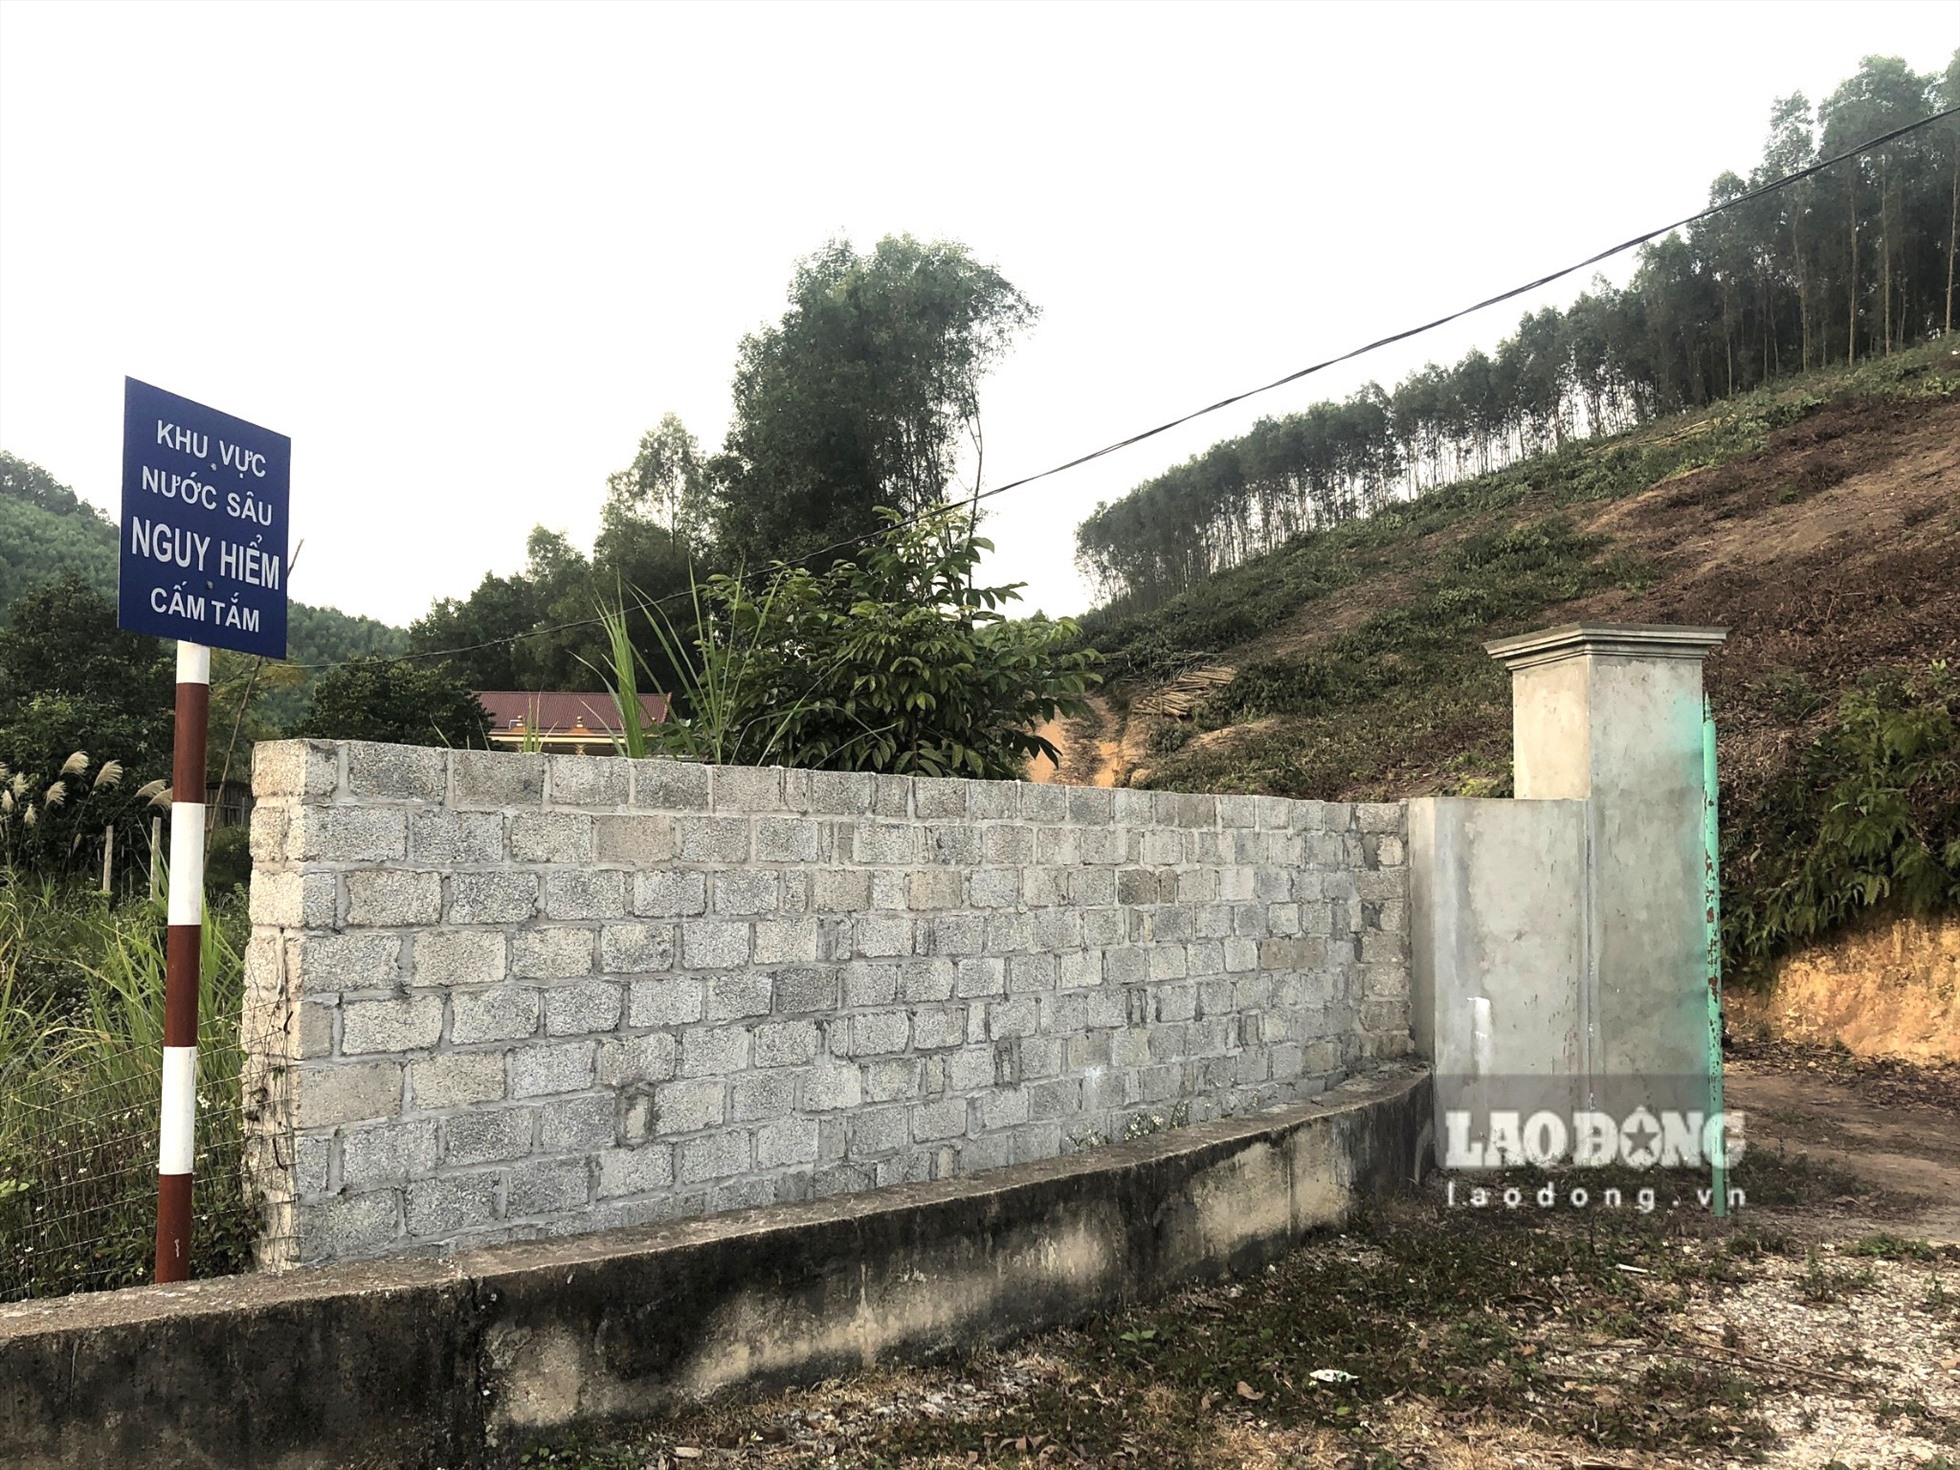 Việc xây dựng trụ cổng và tường bao của gia đình ông Bùi Quang Nguyên đã vi phạm vào hành lang bảo vệ công trình thuỷ lợi. Ảnh: Nguyễn Kiên.